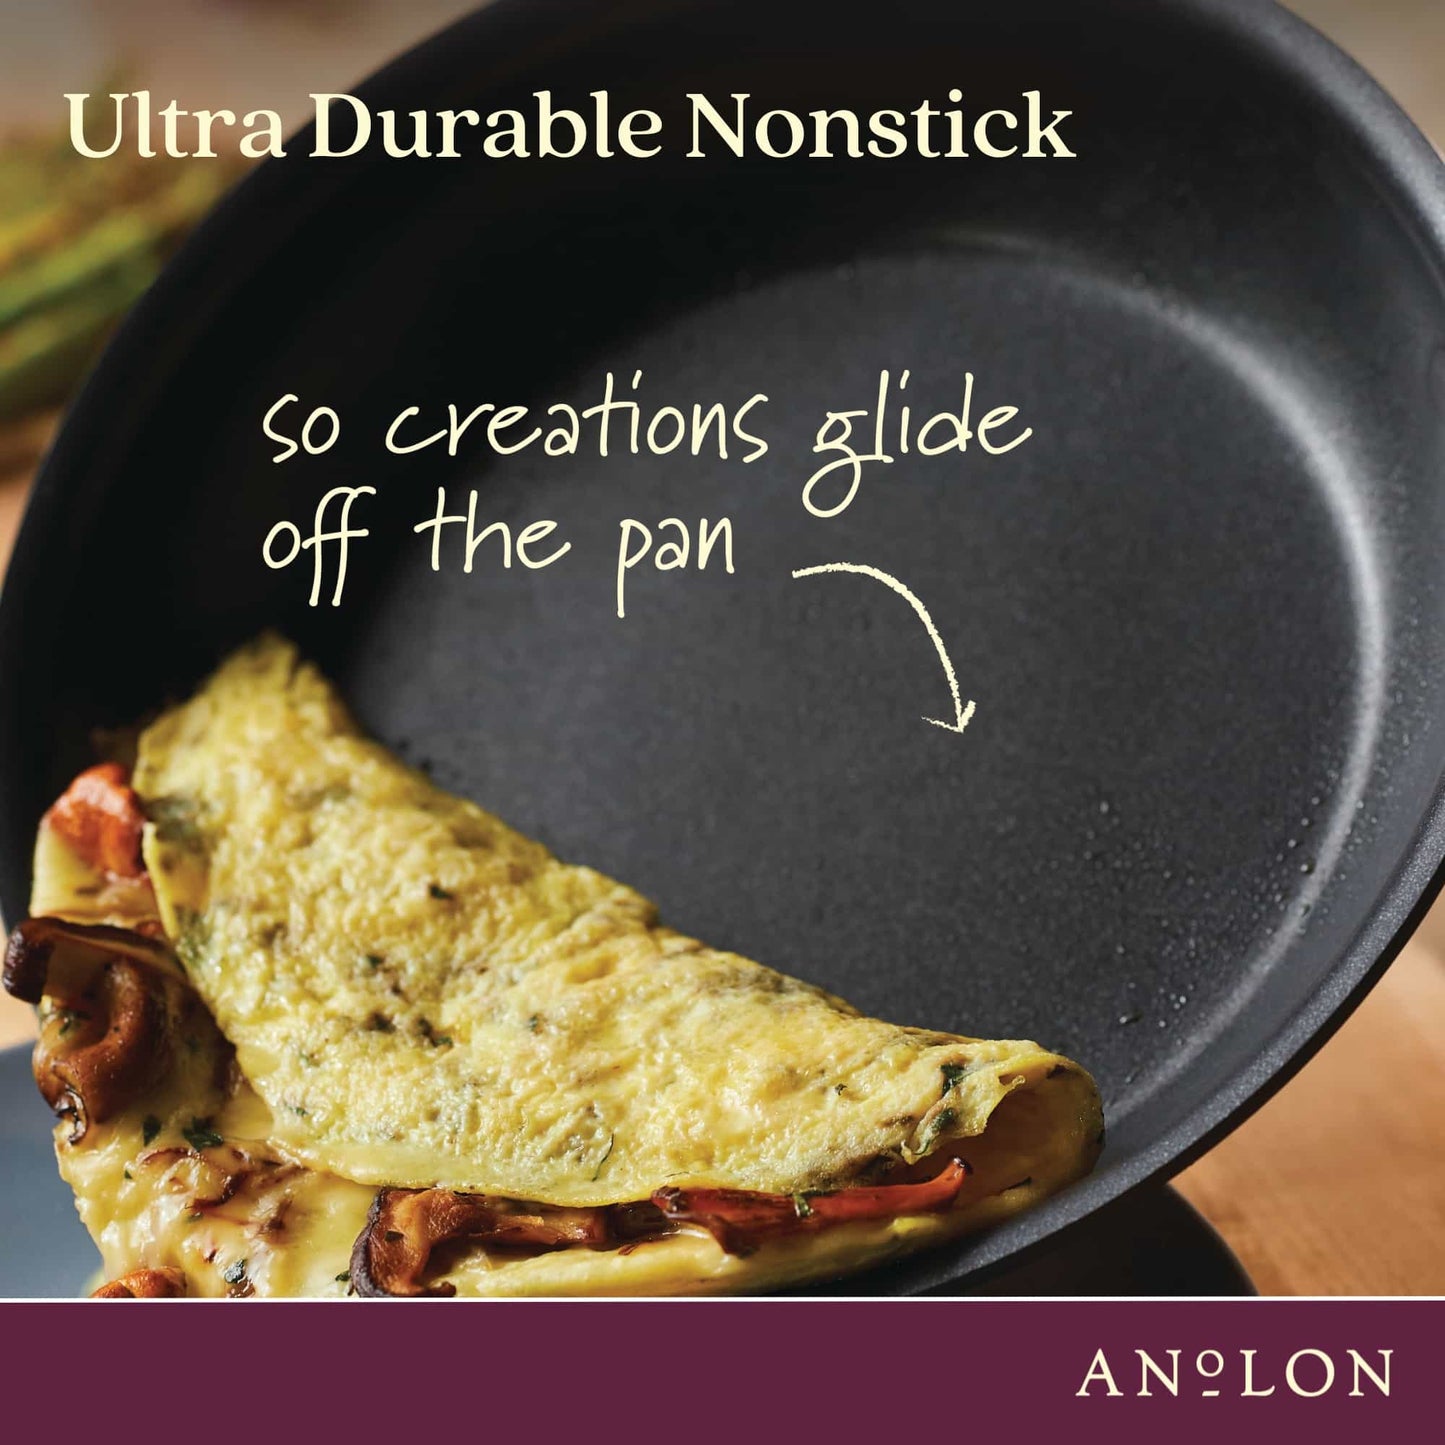 Anolon Professional Nonstick 3 Piece Saucepan Set